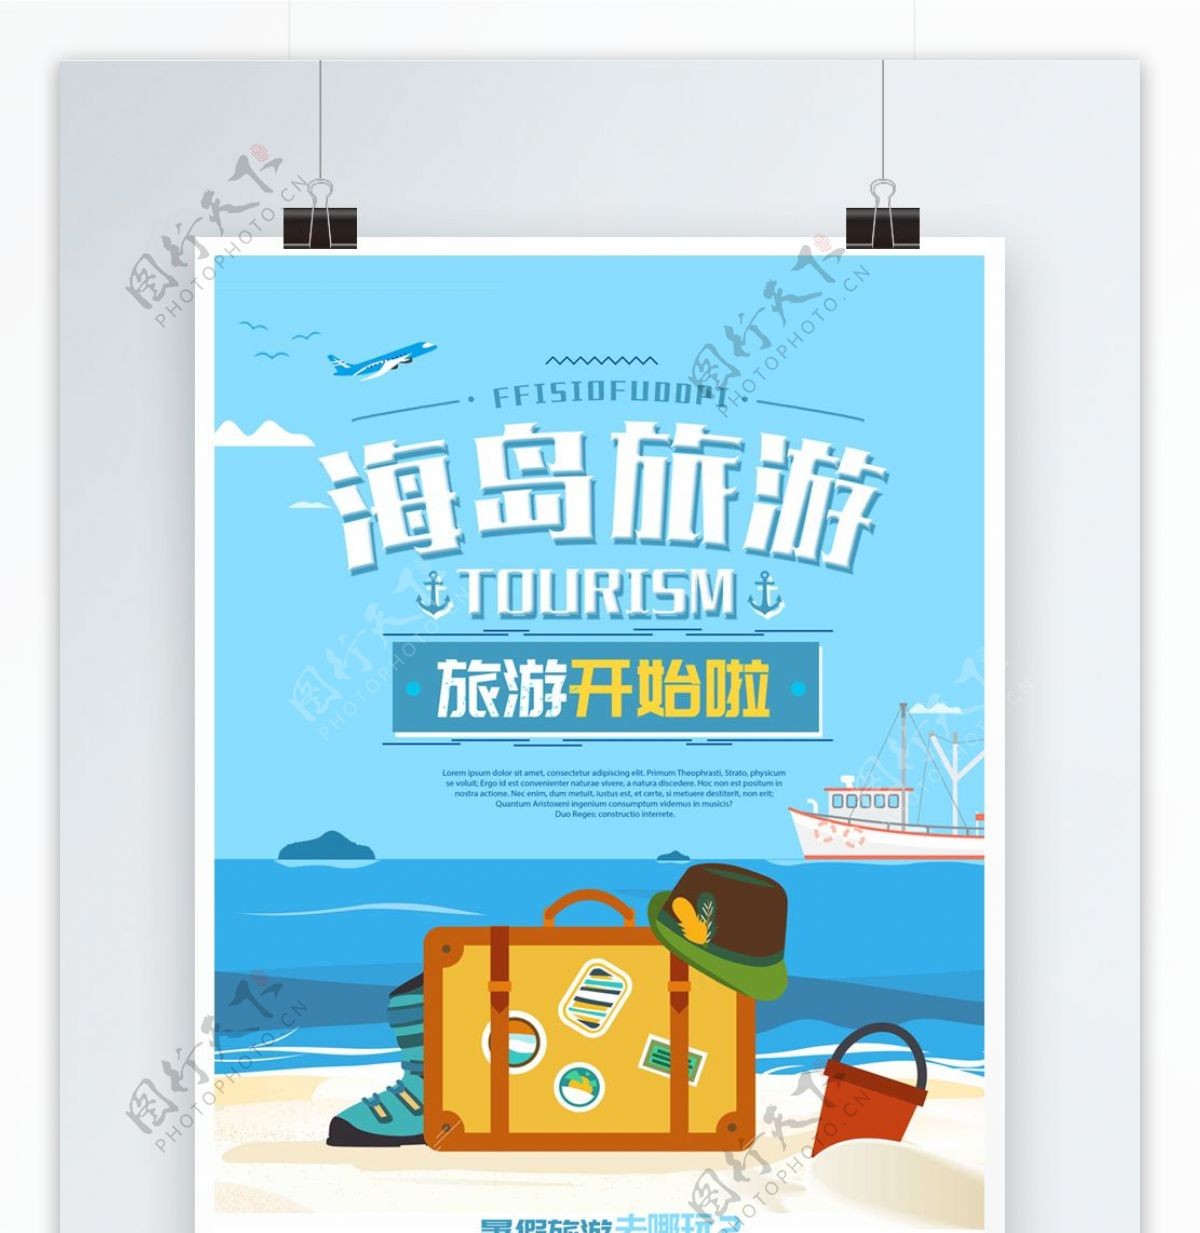 卡通海岛旅游夏季旅游宣传海报